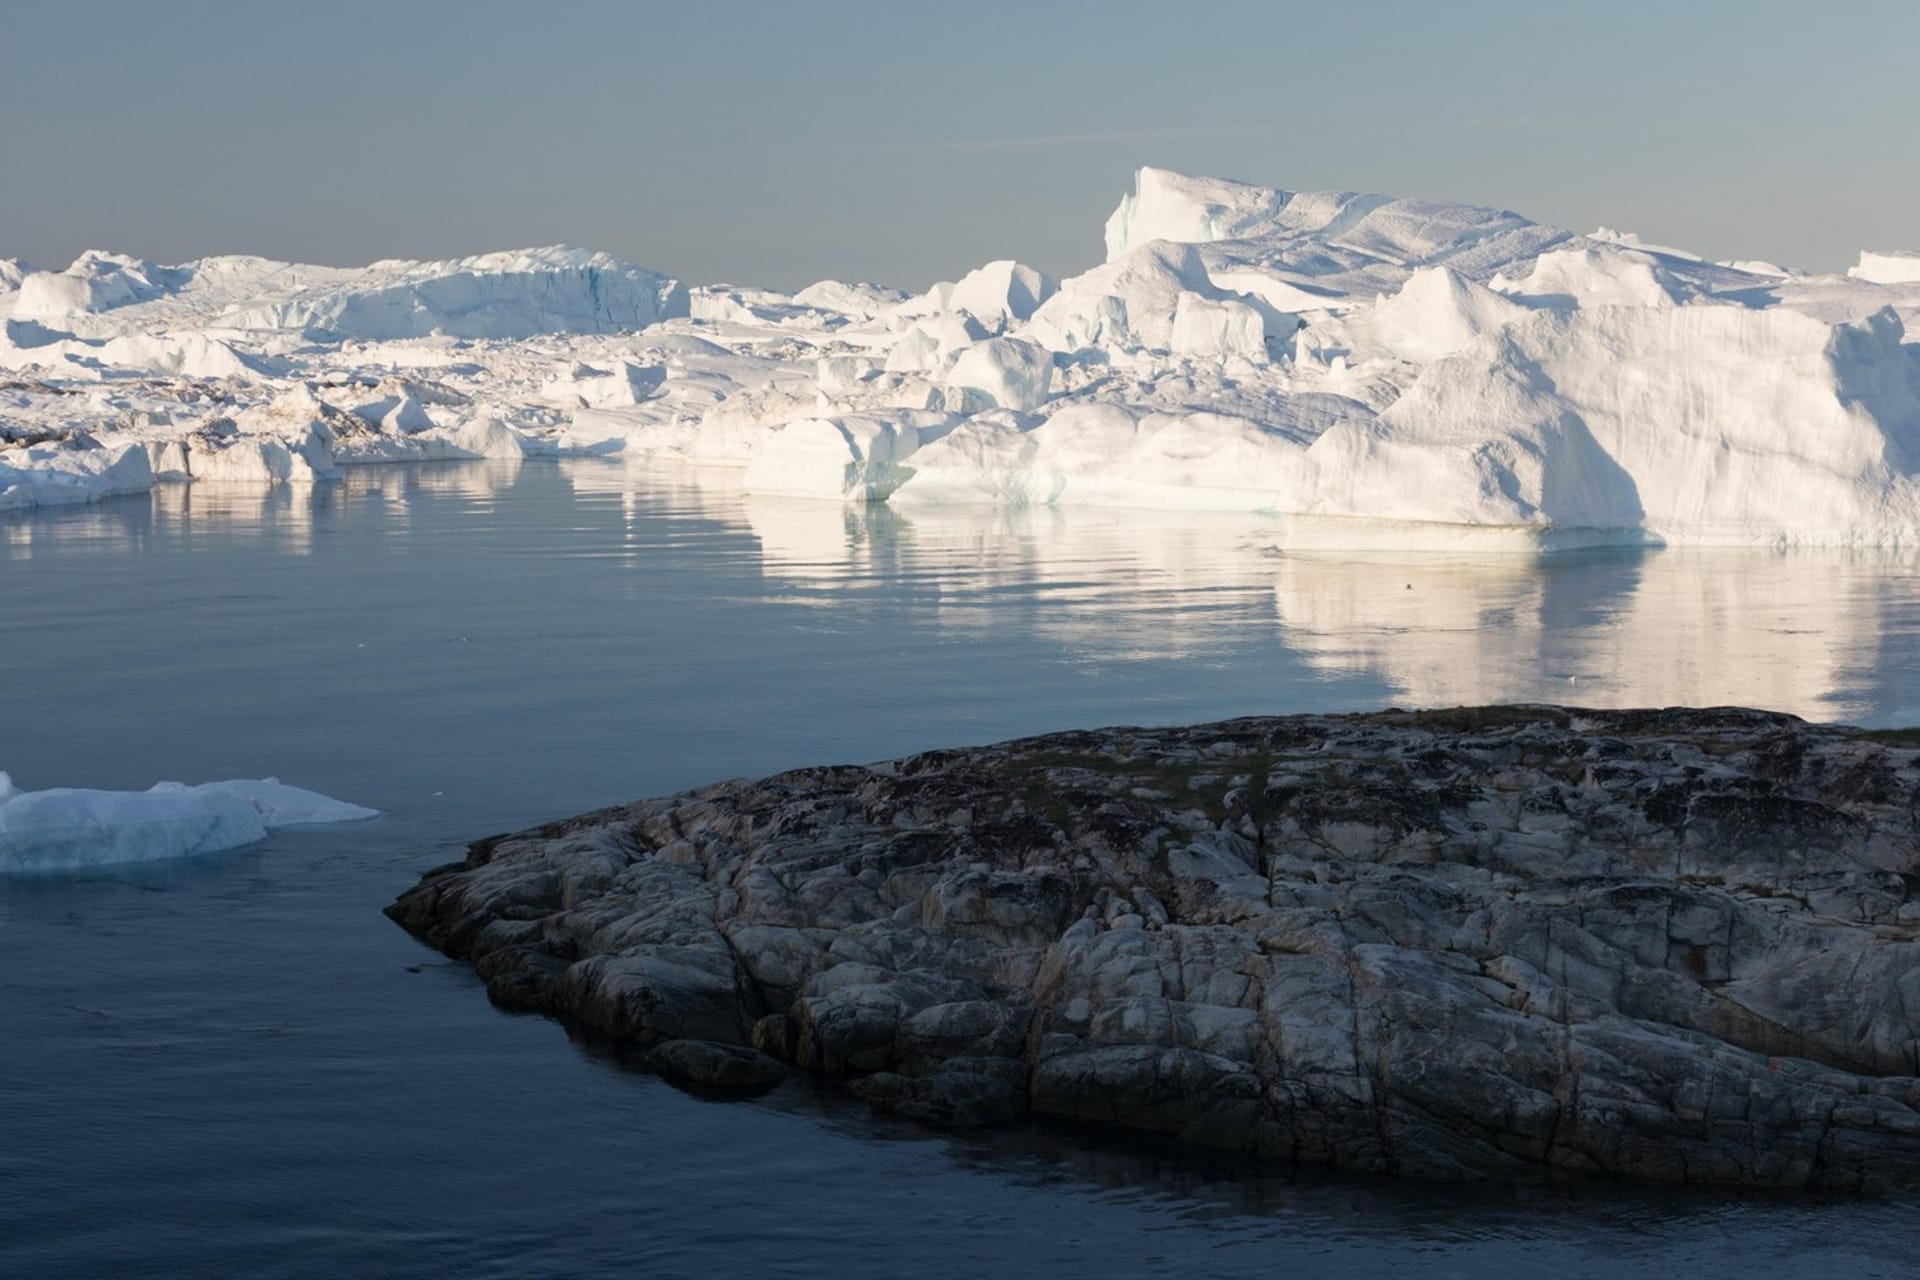 Grónsko je největším ostrovem světa. Je notoricky známé svou odlehlostí, hornatostí a politickou neutralitou, což z něj činí ideální útočiště v případě nouze. Odhaduje se, že na něm žije 56 tisíc lidí, což znamená, že se pravděpodobně nestane cílem žádné světové velmoci.